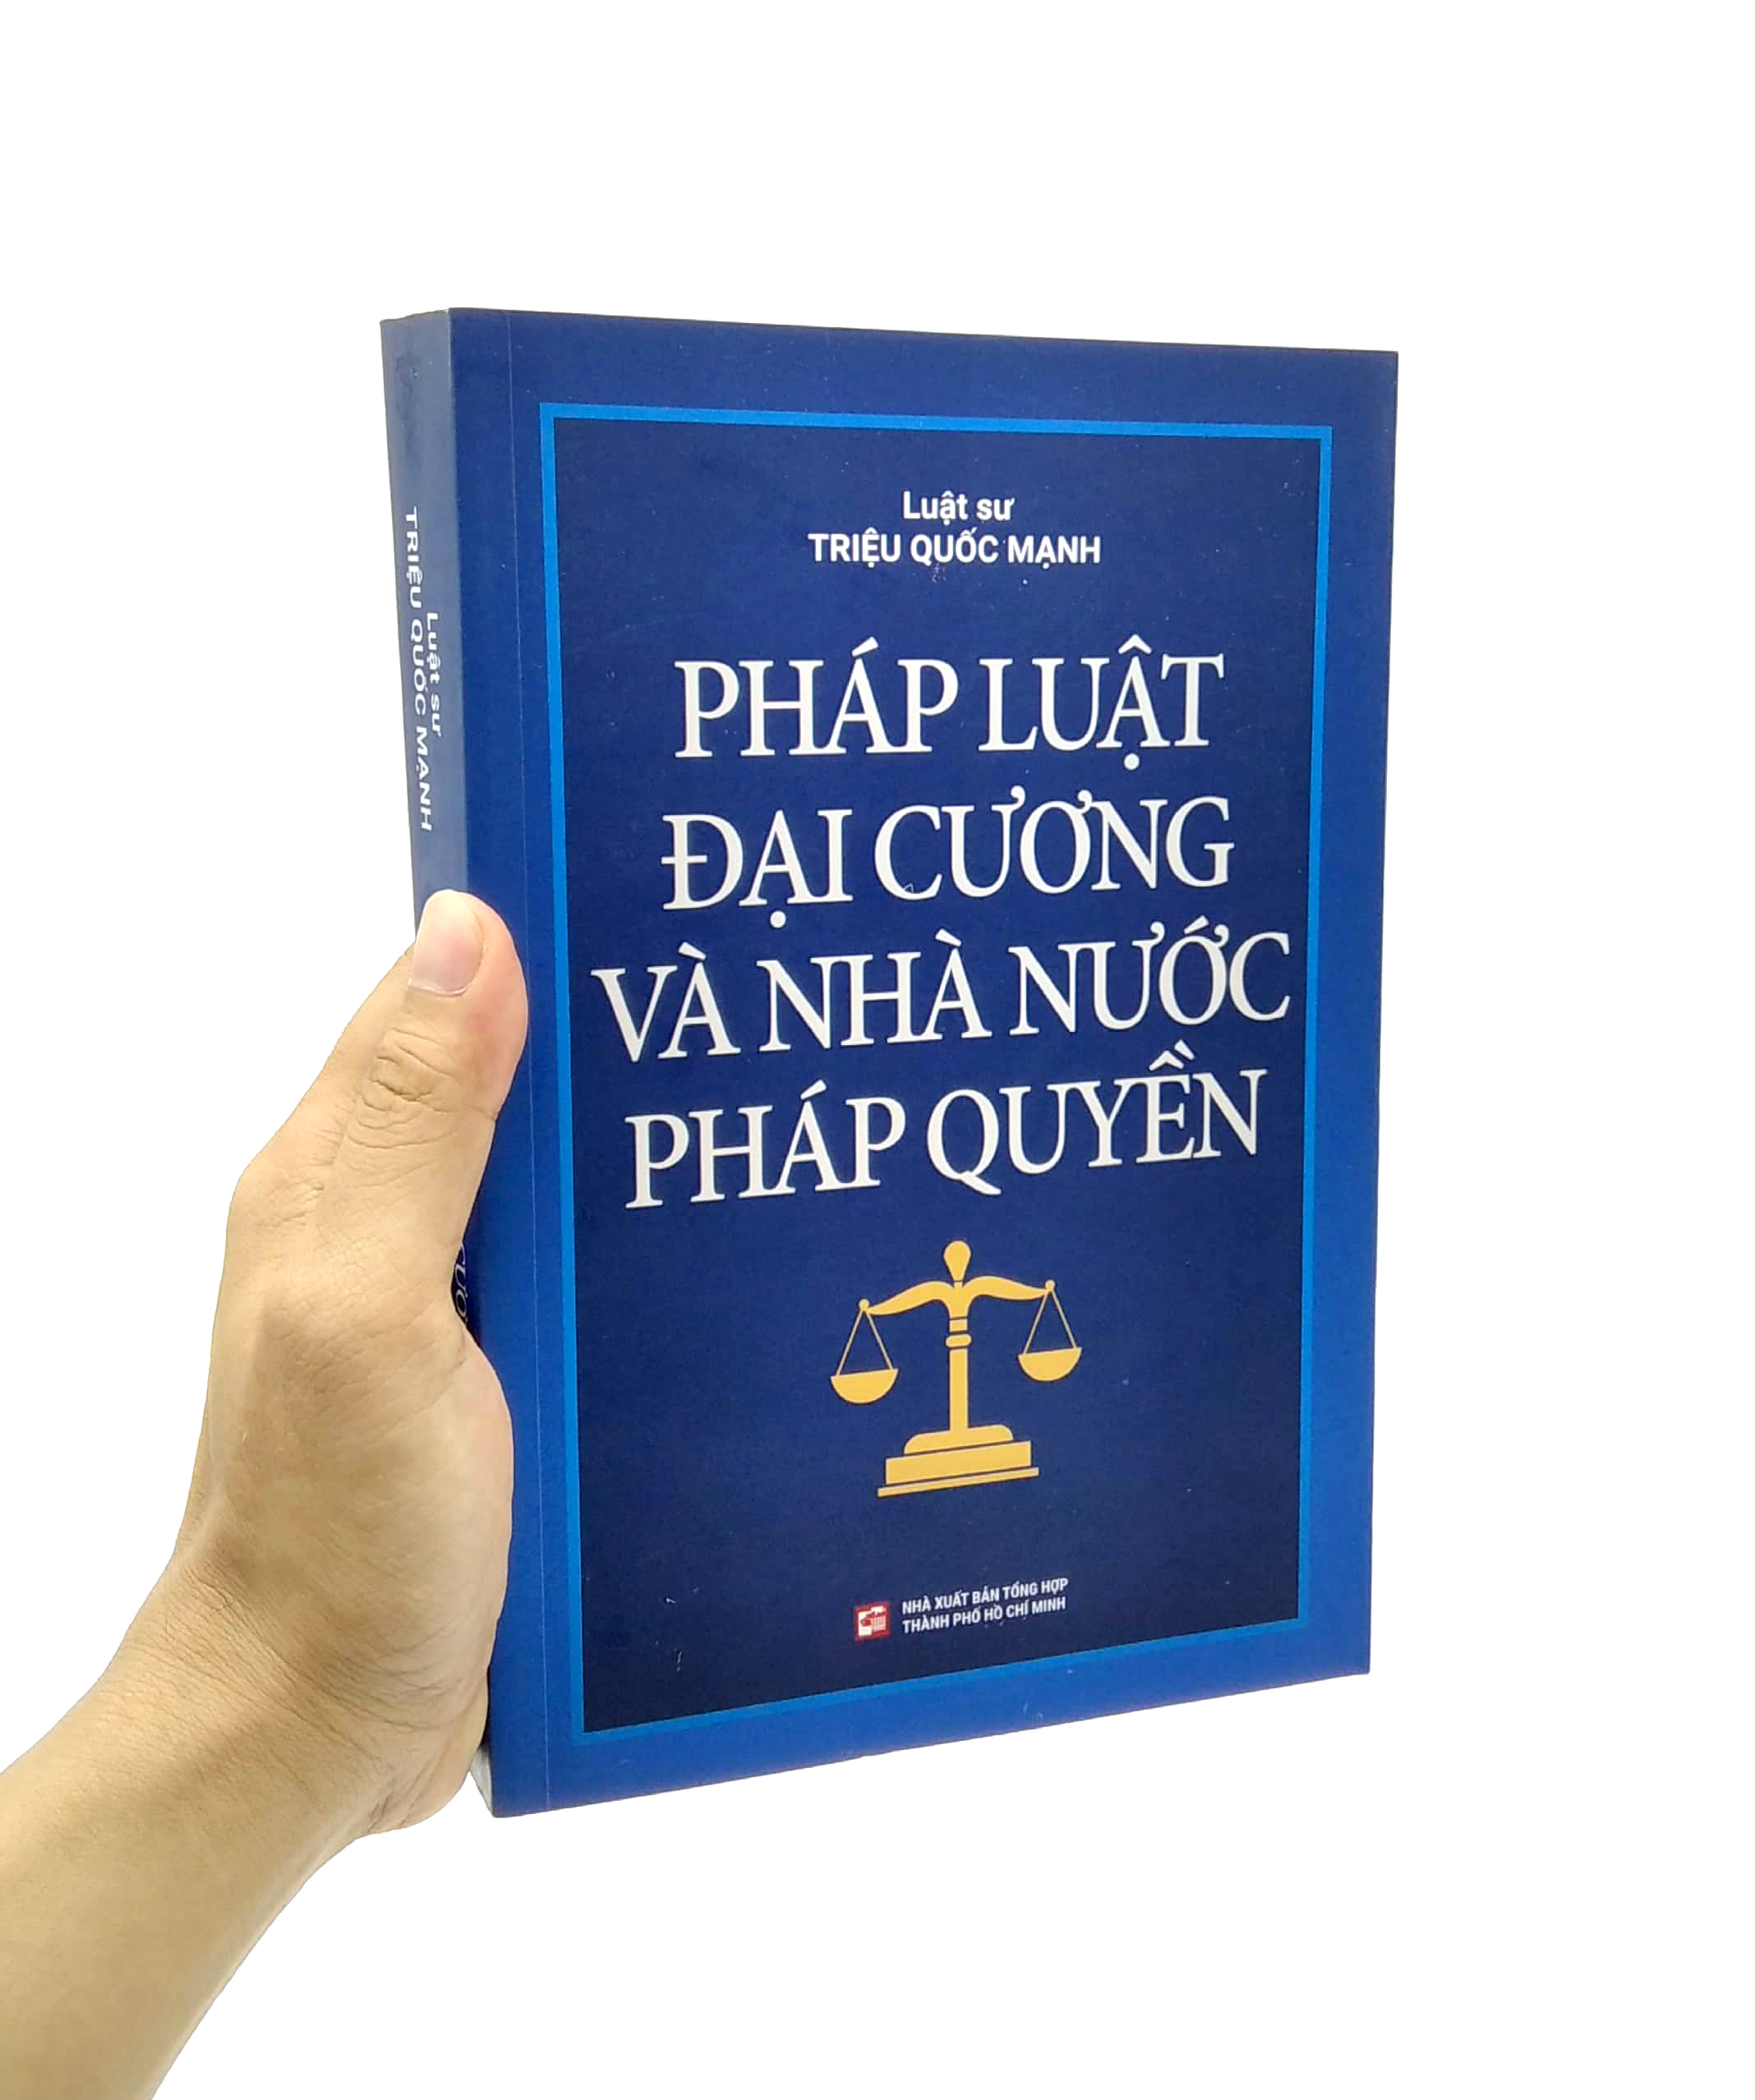 Pháp Luật Đại Cương Và Nhà Nước Pháp Quyền PDF